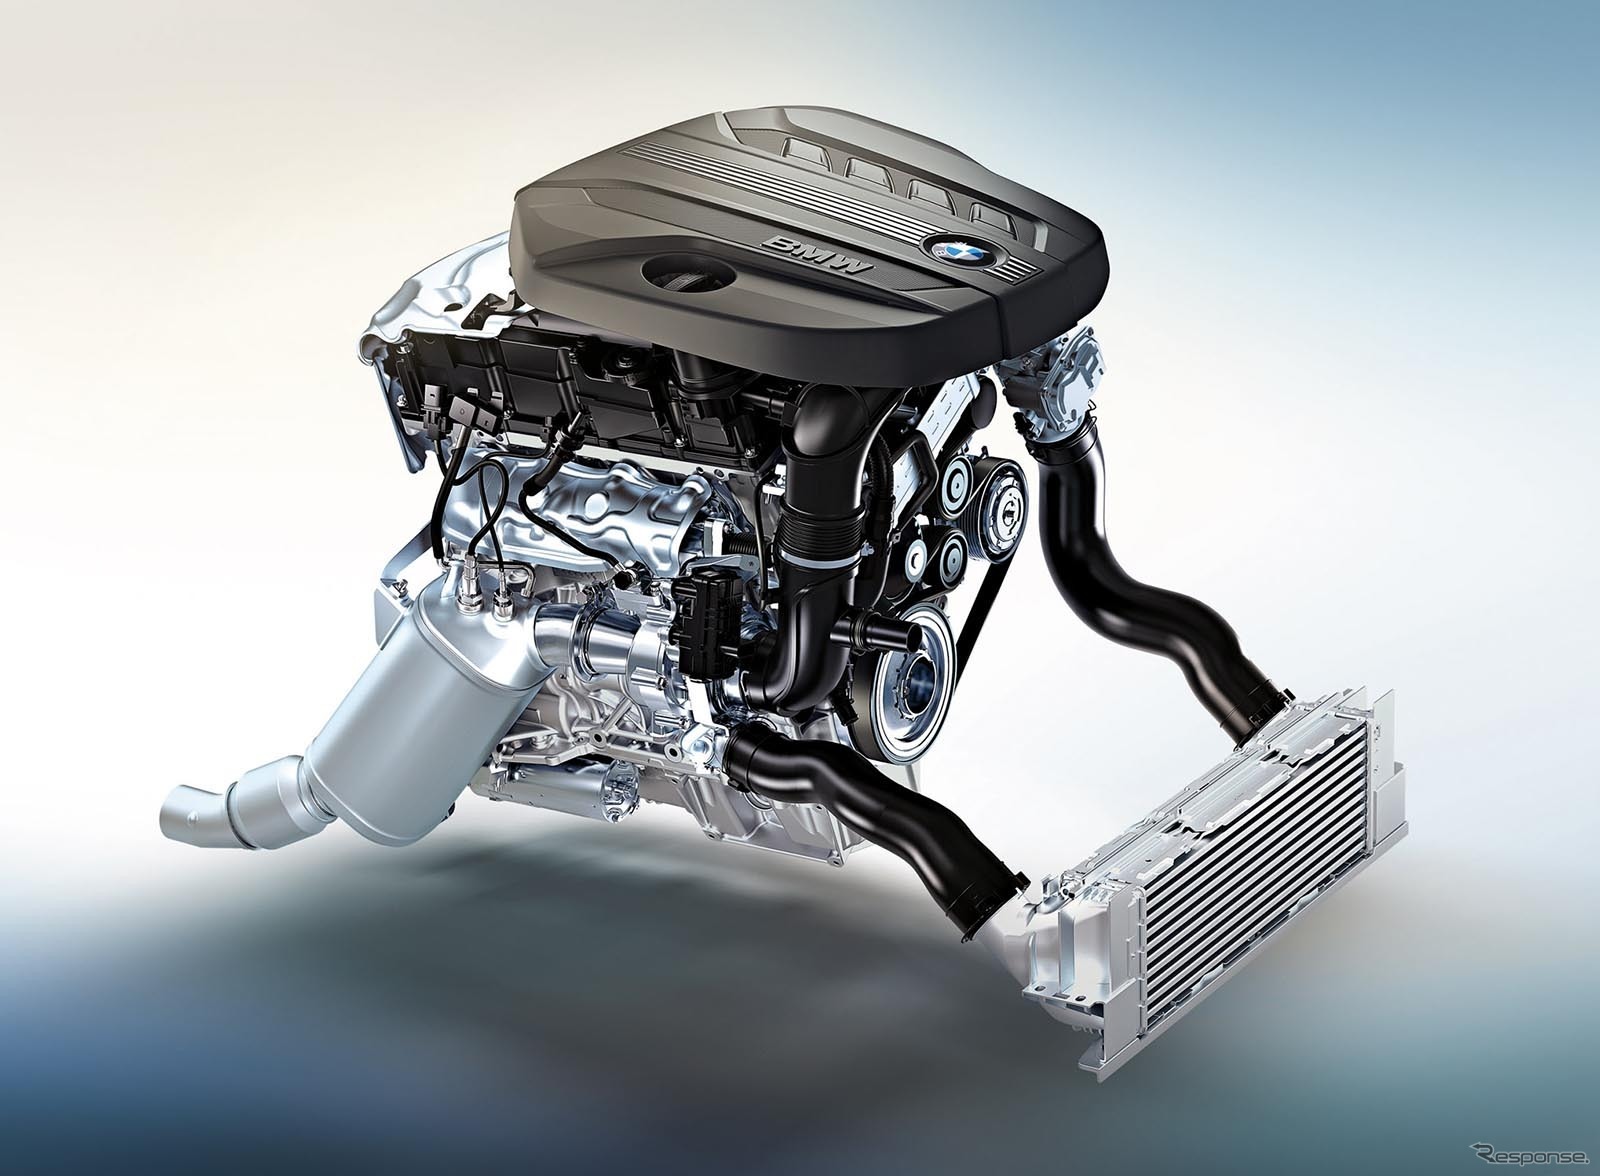 BMWの新型4気筒ディーゼルエンジン